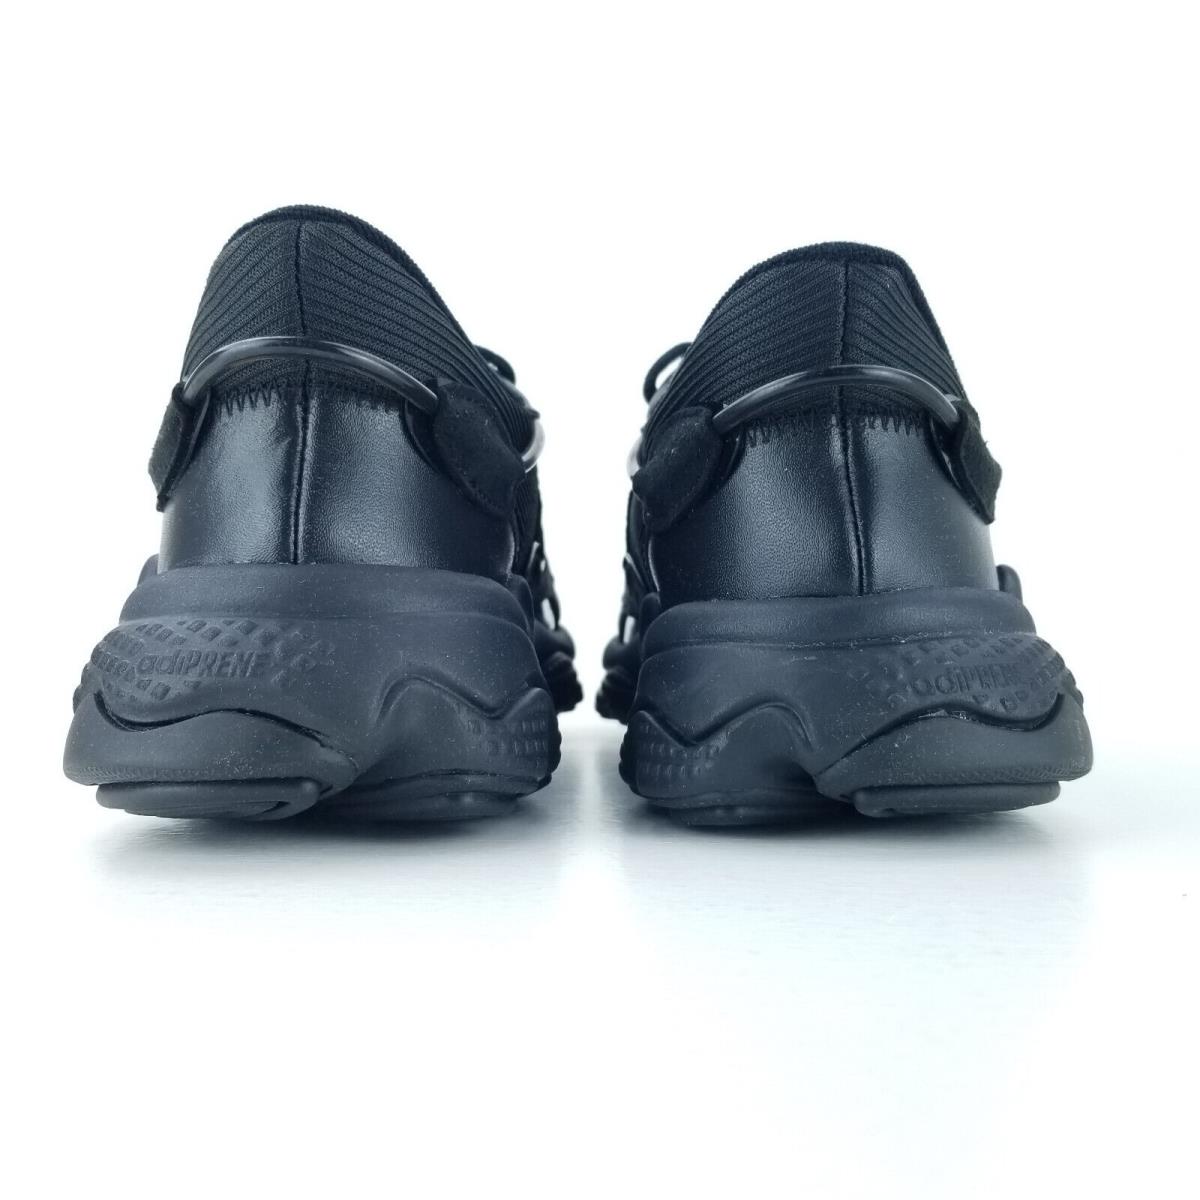 Adidas shoes Originals Ozweego - Black 3